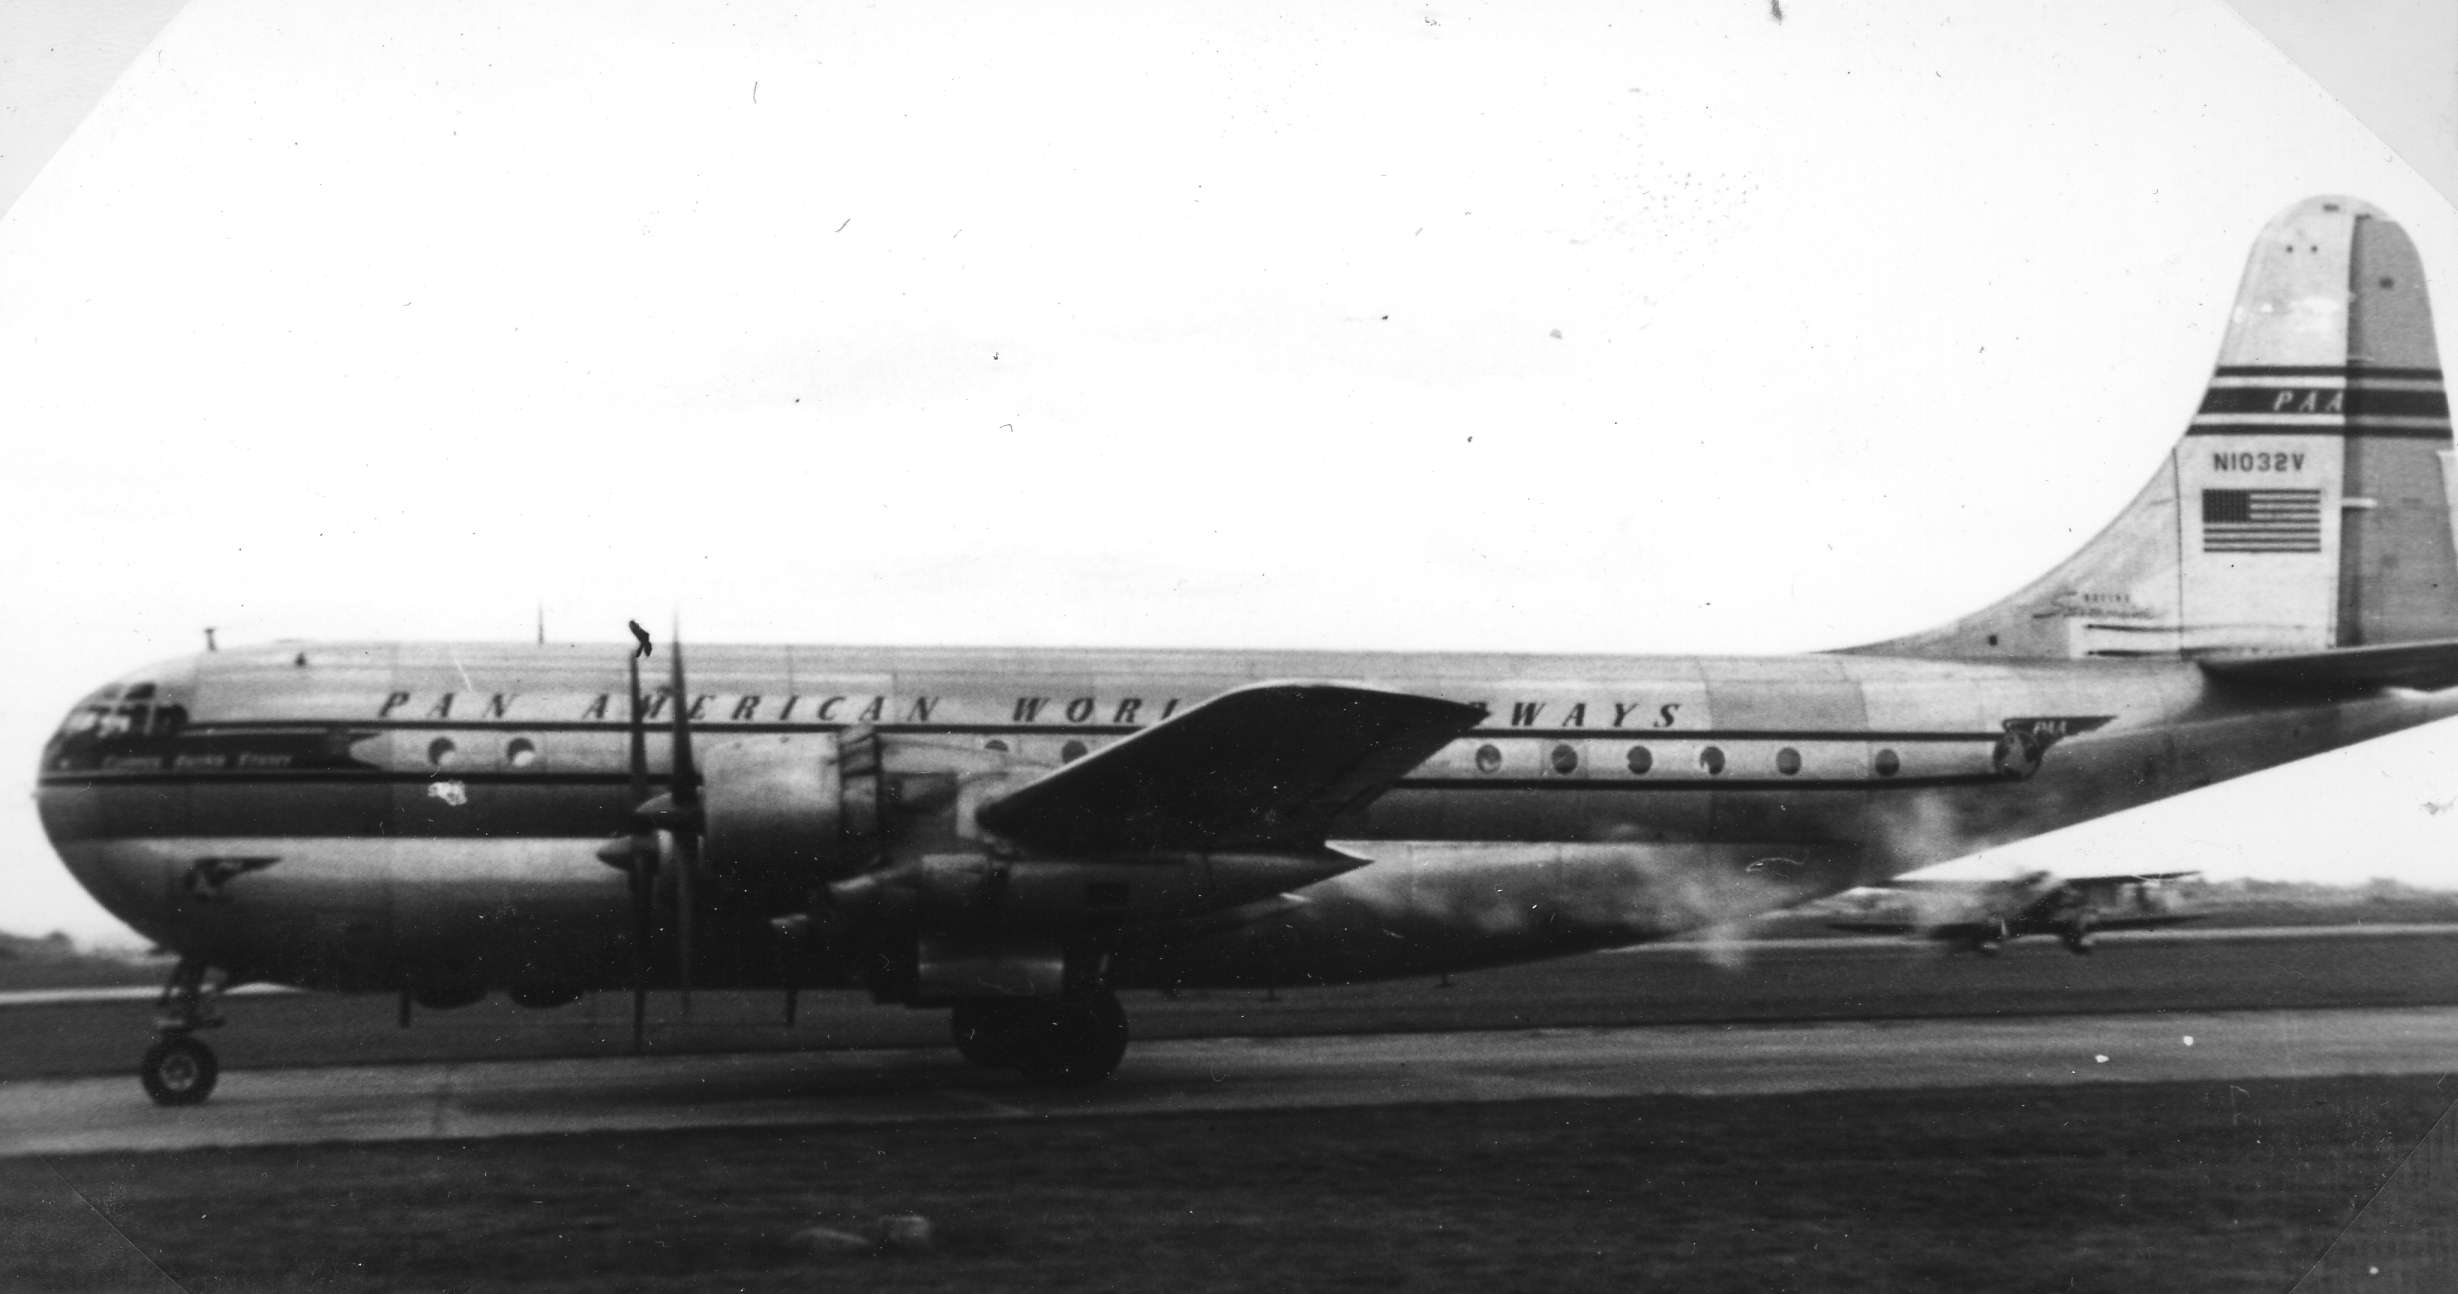 Pan American World Airways' Boeing 377-10-26 Stratocruiser serial number 15932, N1032V.